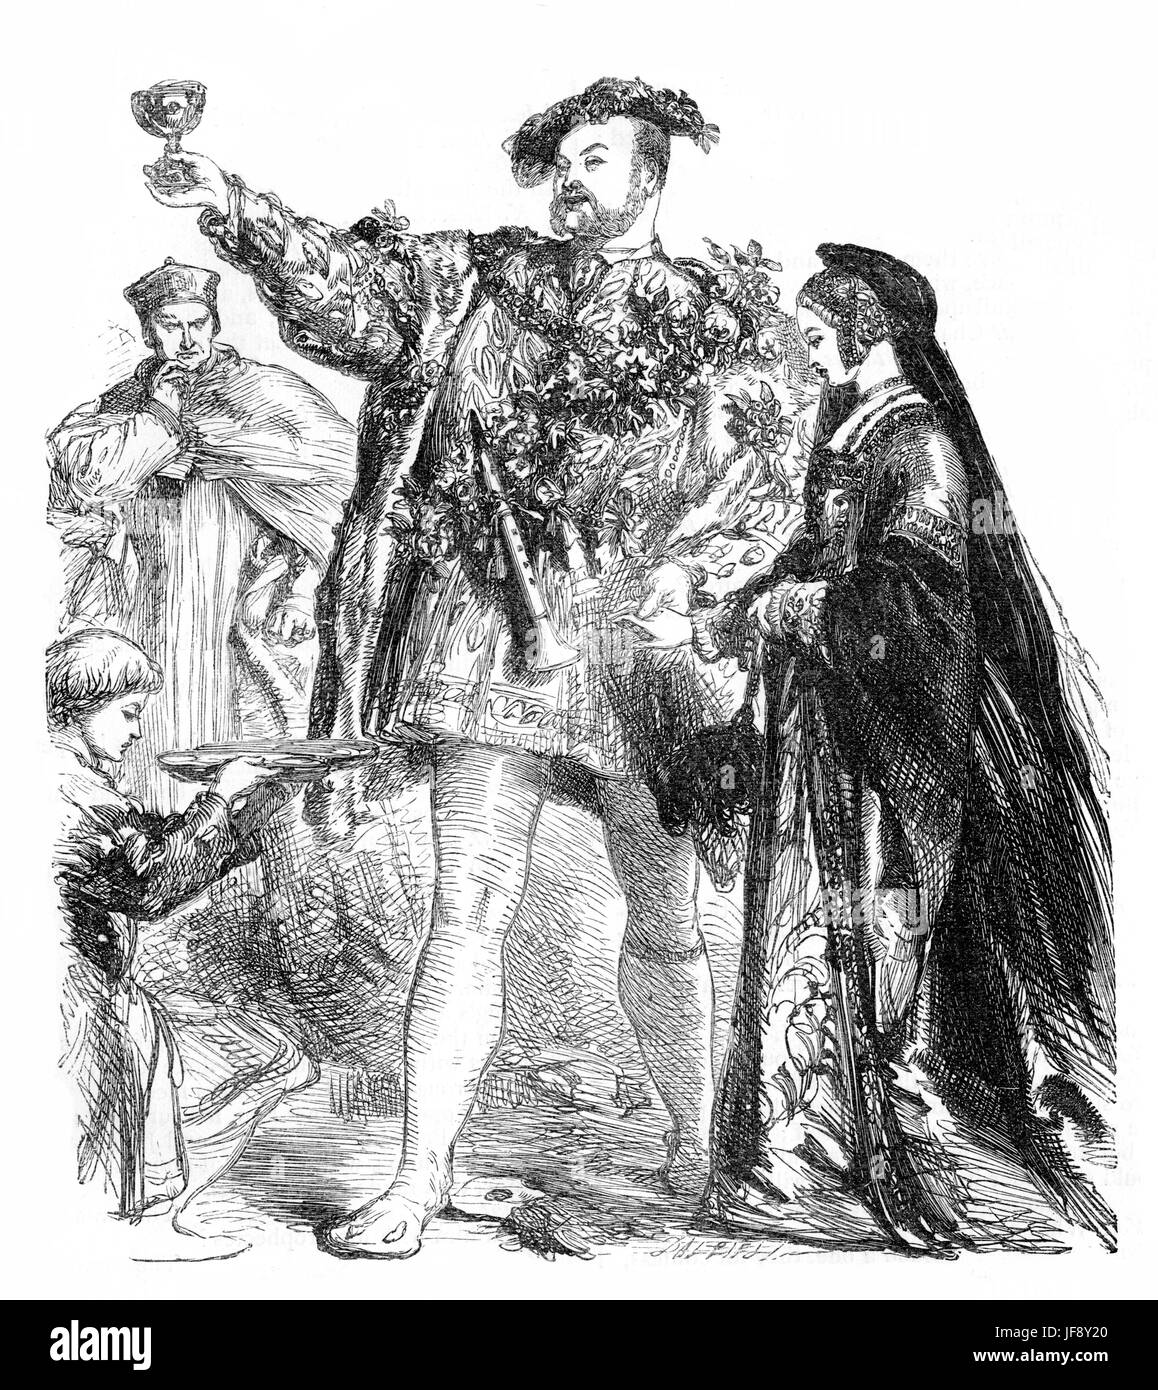 Henry VIII, Play by William Shakespeare (26 Aprile 1564 - 23 Aprile 1616). Atto 1 scena 4, Re Enrico e Anne Boleyn. Illustrazione da Sir John Gilbert RA (21 luglio 1817 - 5 ottobre 1897), incisa da Dalziel Foto Stock